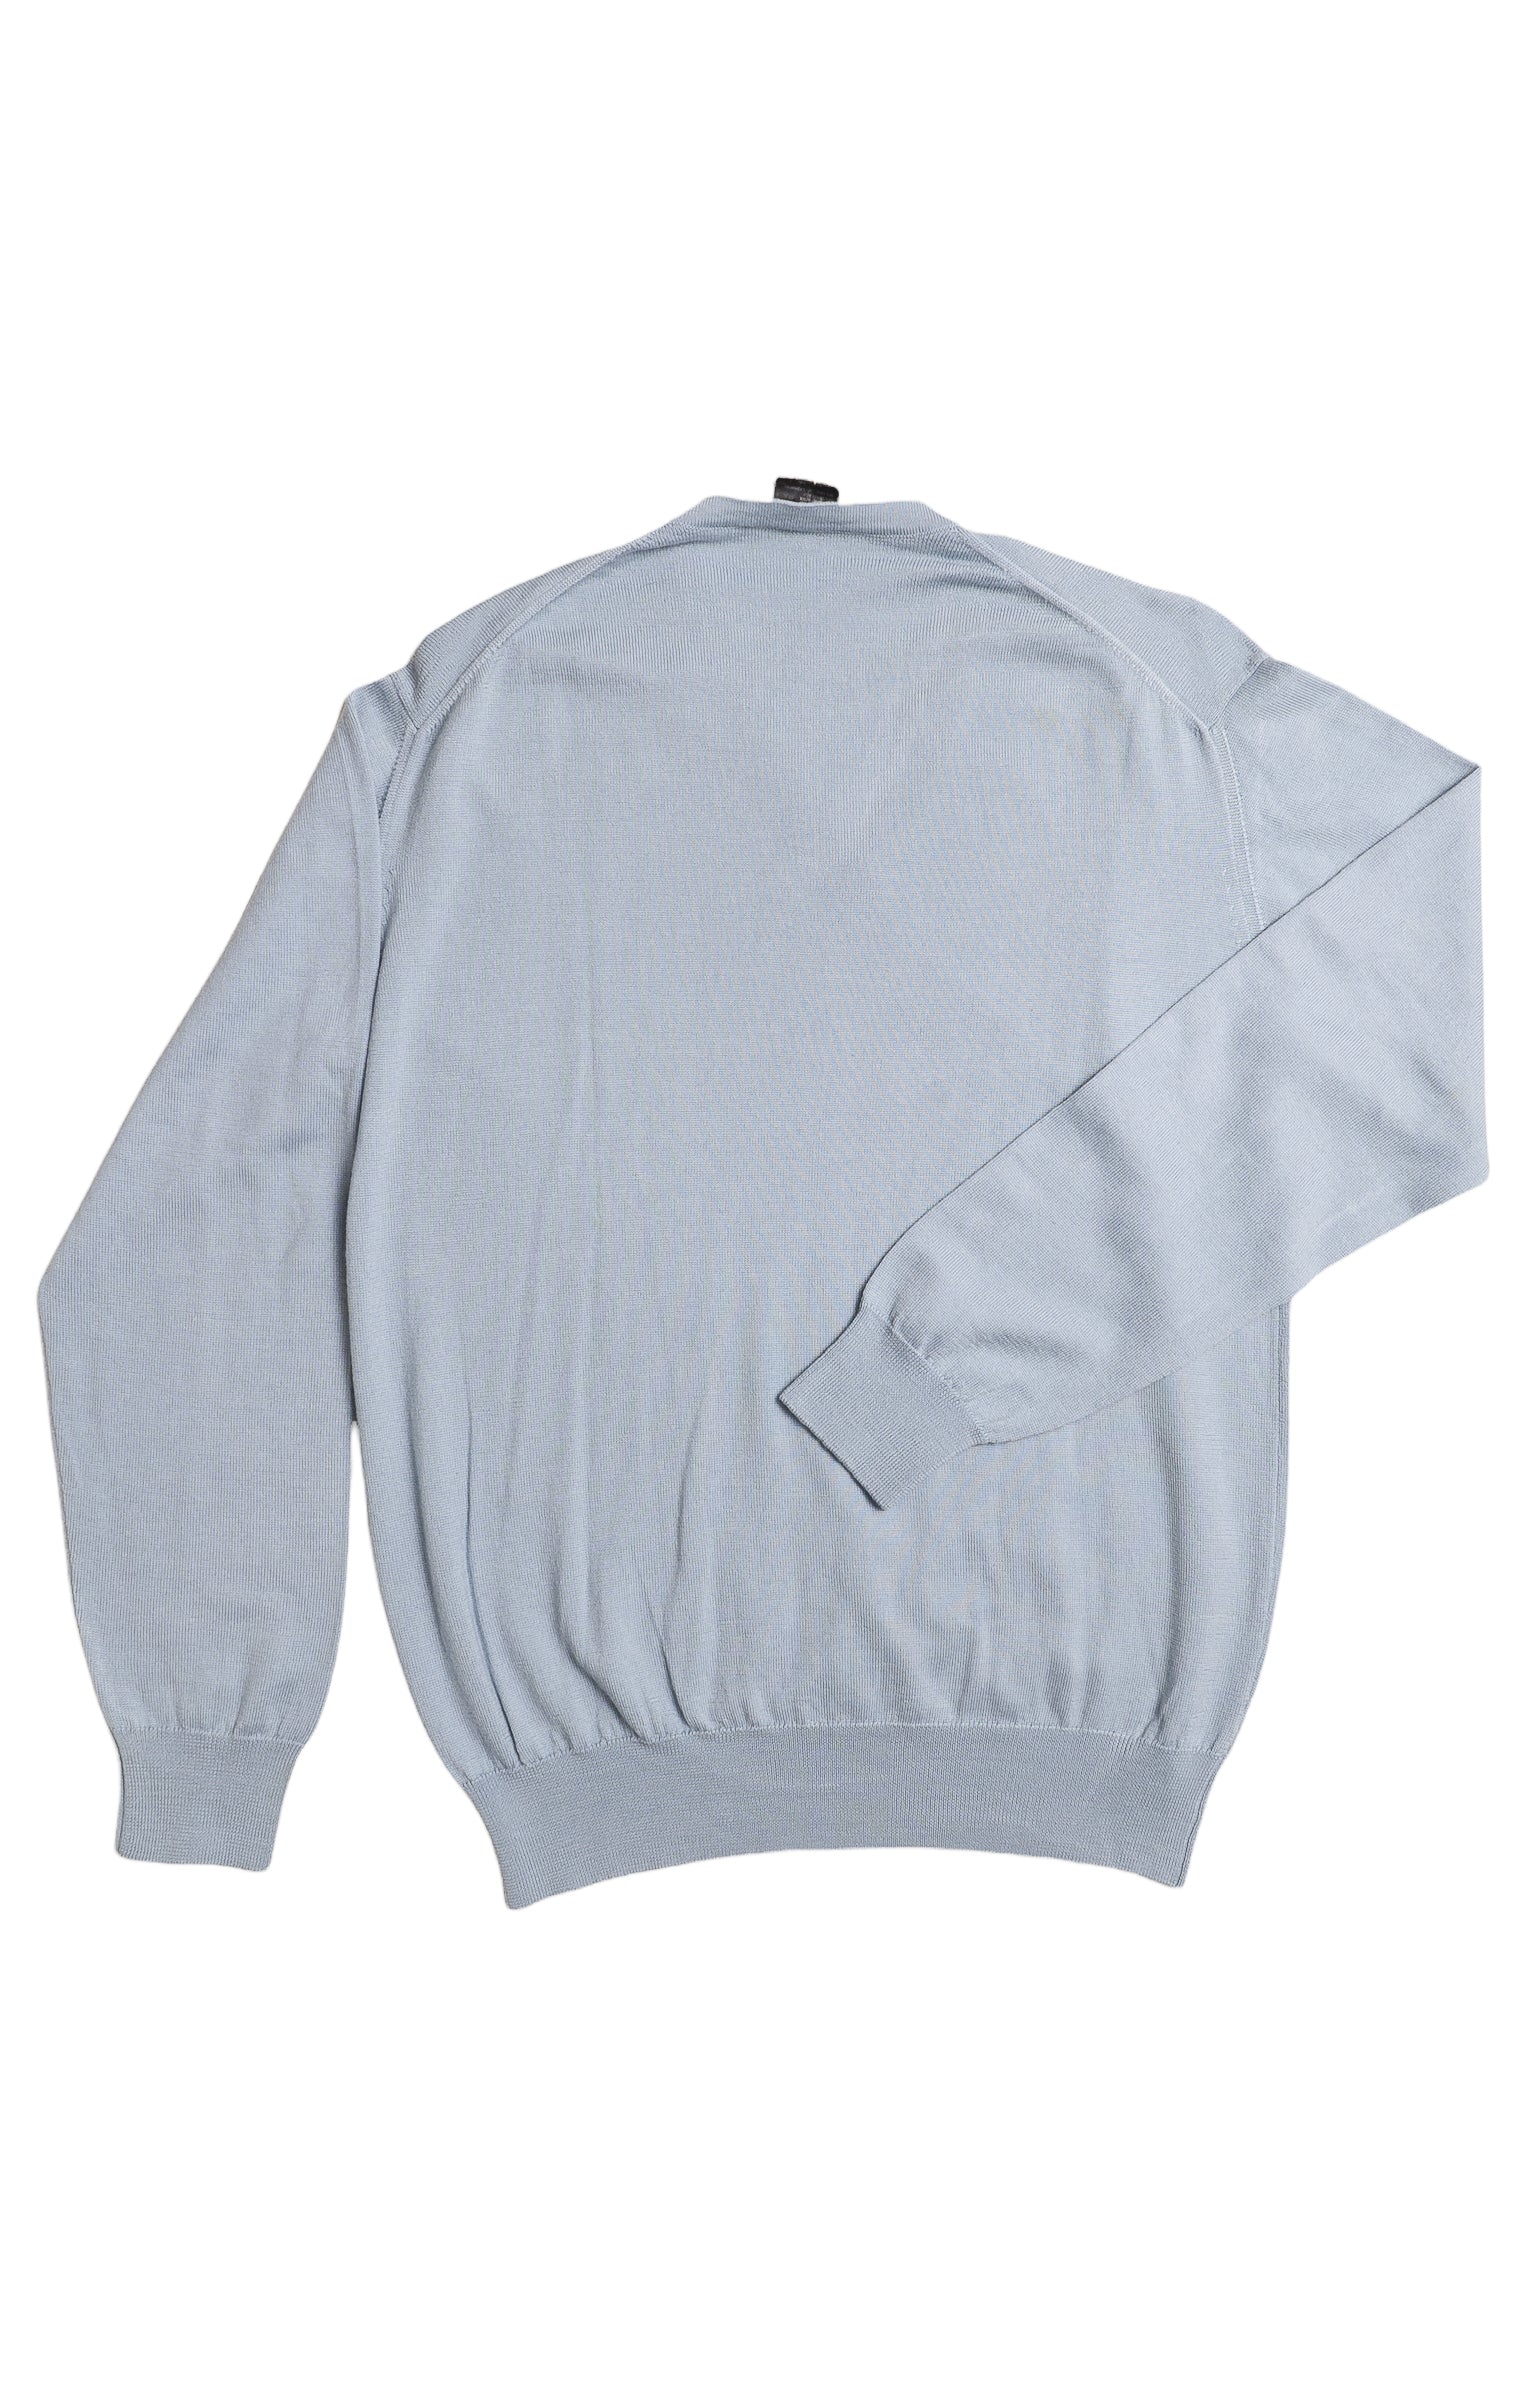 GUCCI Sweater Size: L